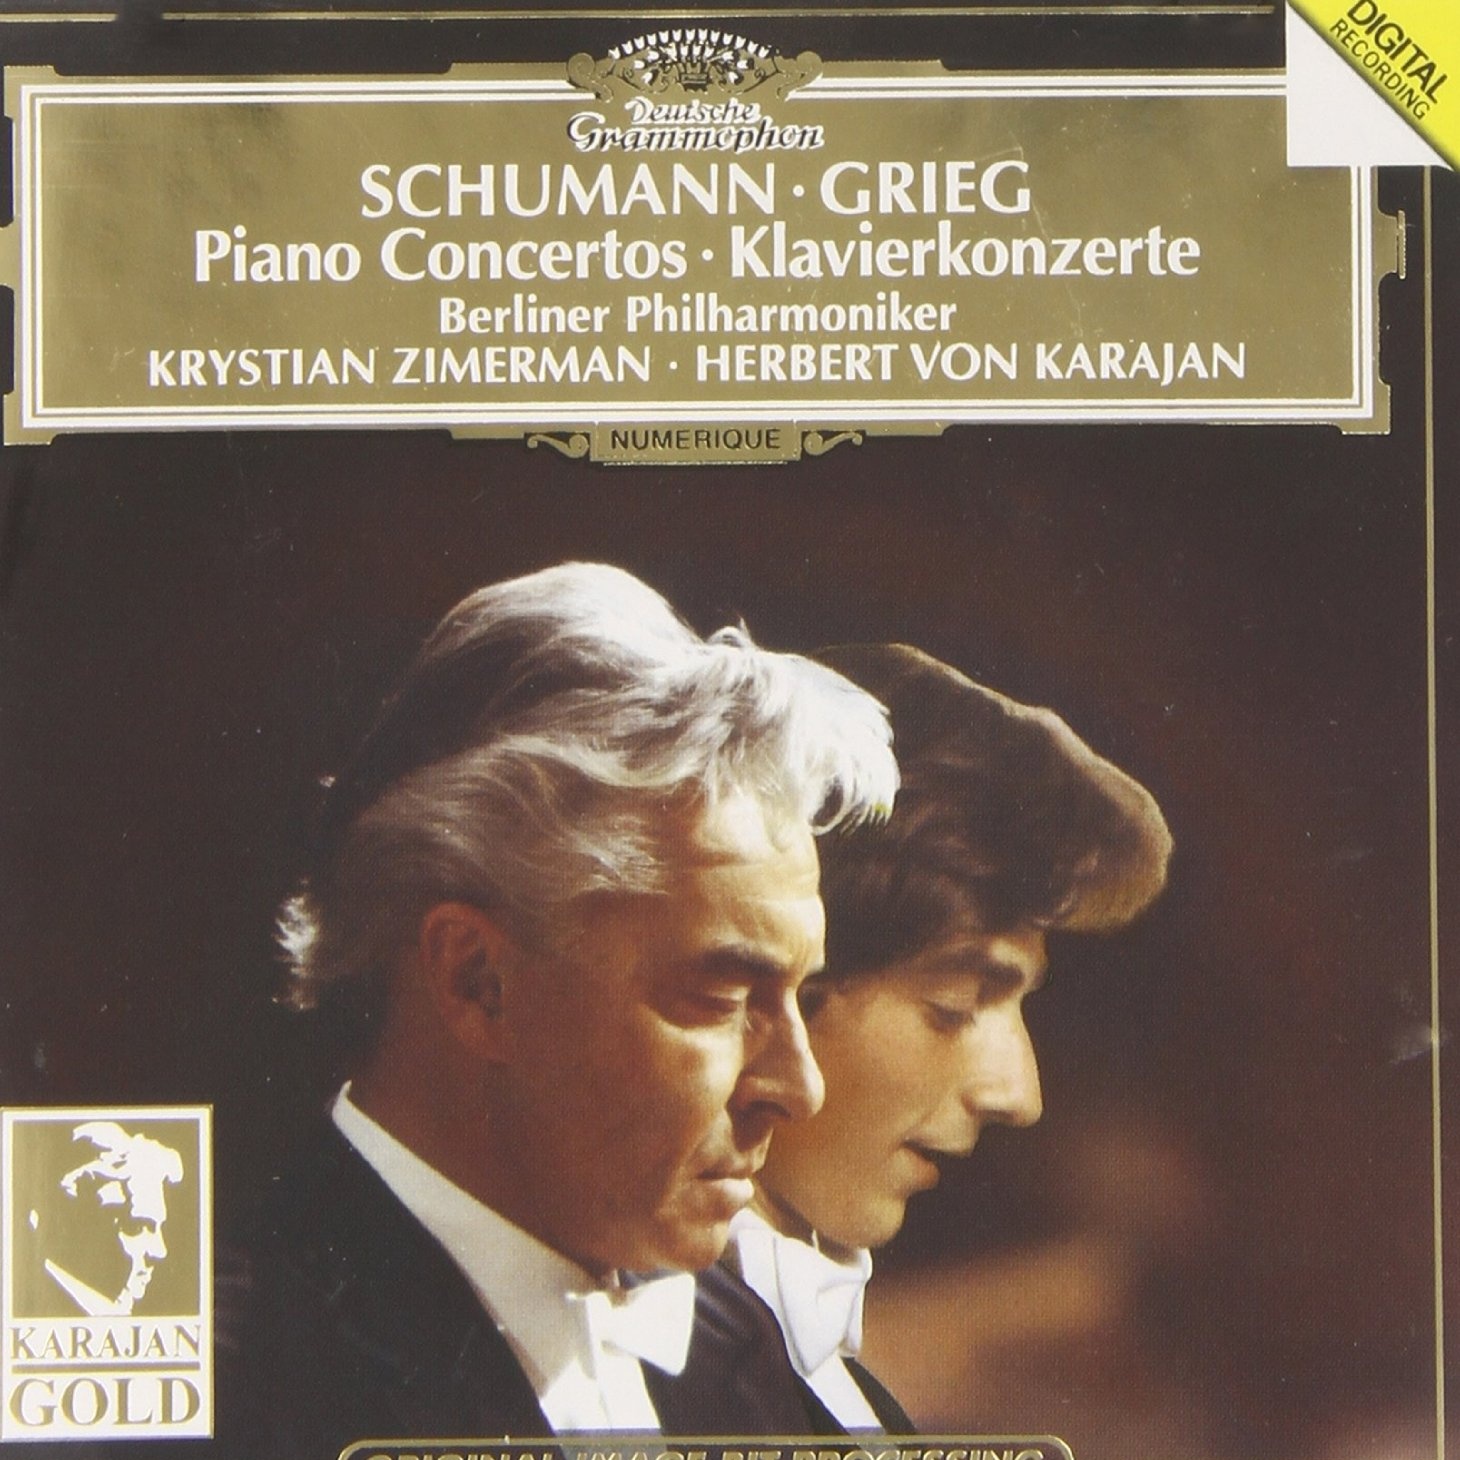 Grieg - Klavierkonzert in a-Moll, Op. 16 - II. Adagio - III. Allegro moderato molto e marcato